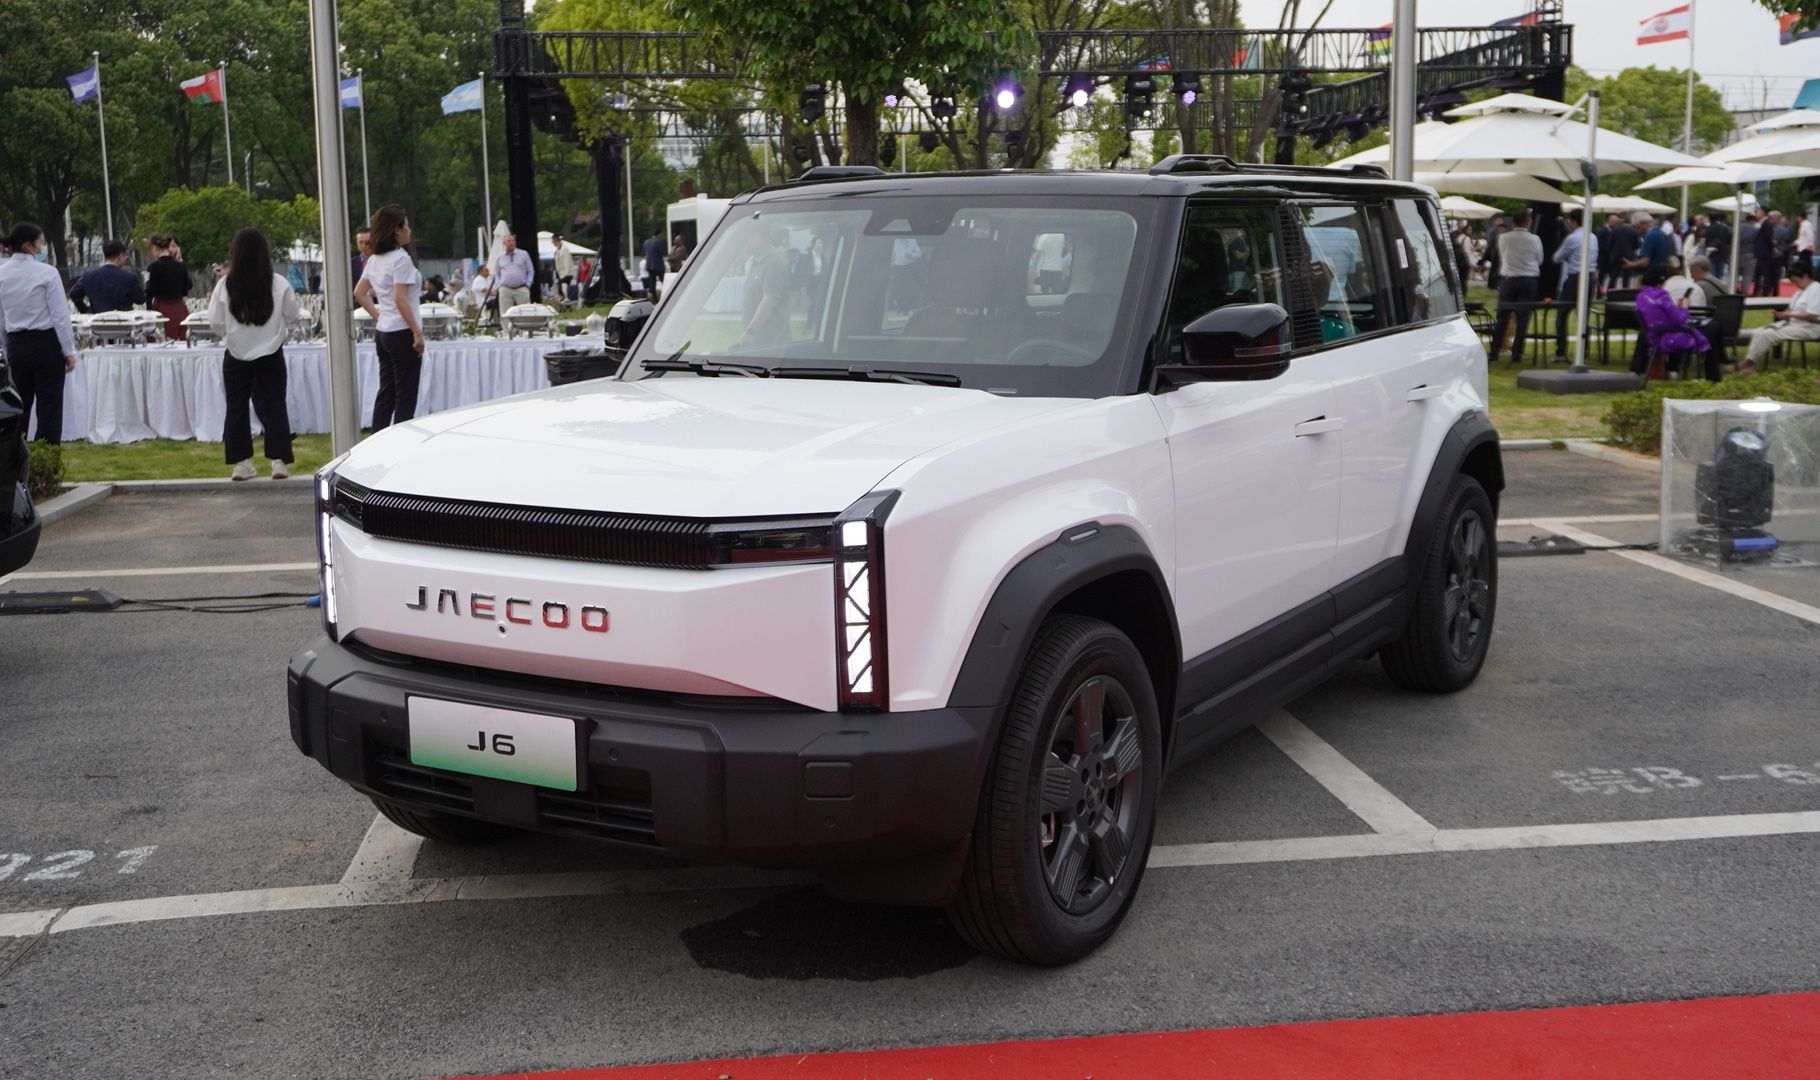 spesifikasi mobil listrik jaecoo j6, rencananya masuk indonesia 2025